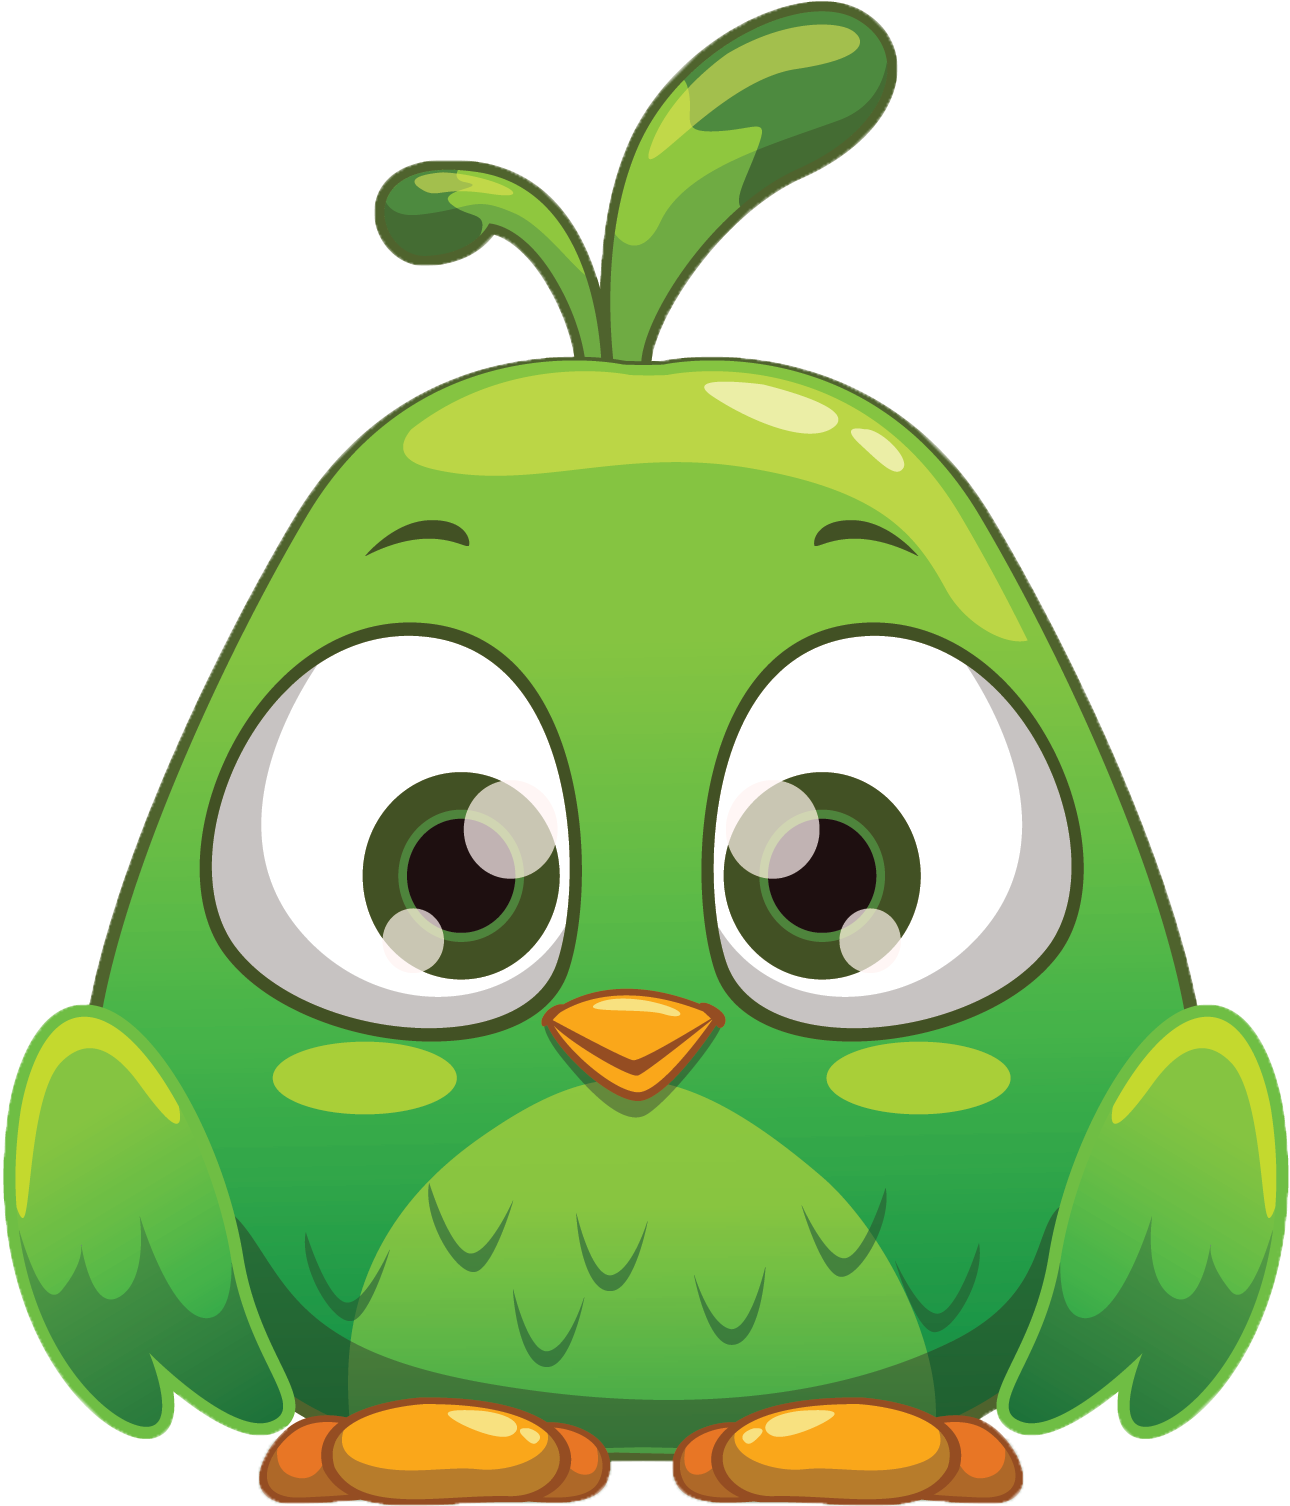 A Cartoon Of A Green Bird